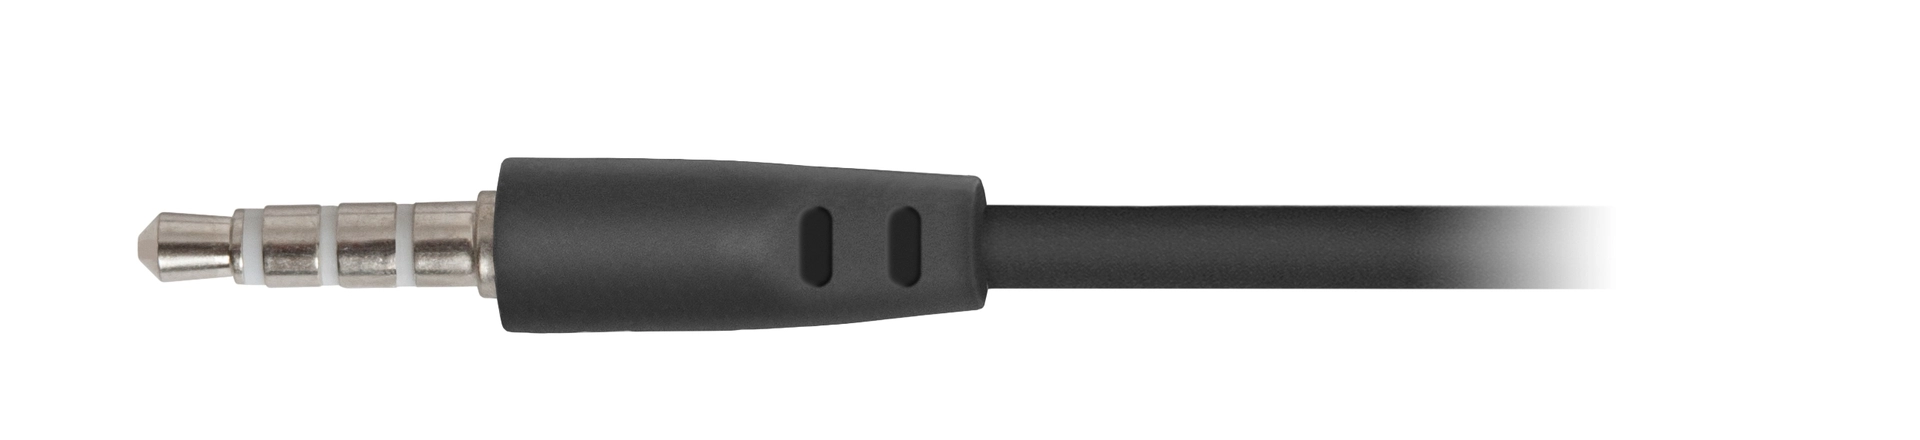 Наушники проводные DEFENDER Pulse 420 black/red (63424)